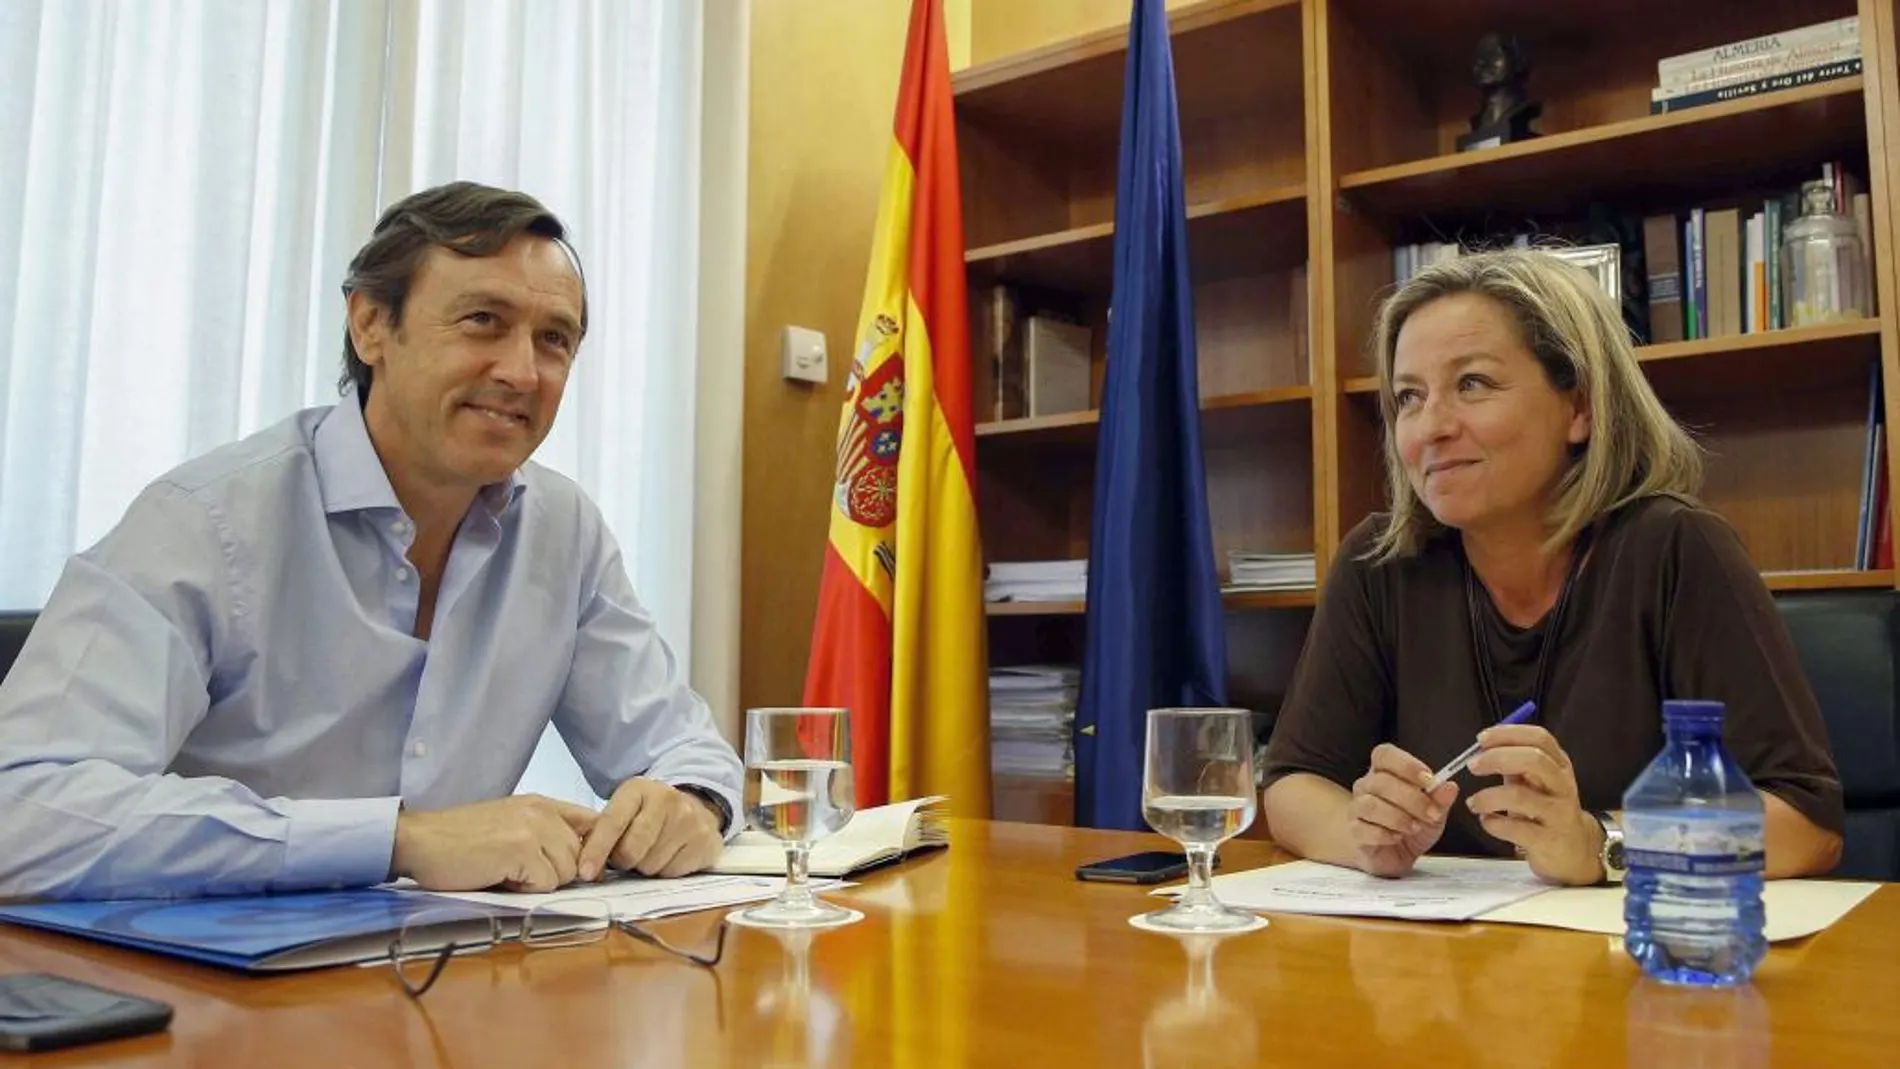 El portavoz parlamentario del PP, Rafael Hernando (i), y la diputada de Coalición Canaria (CC), Ana Oramas (d), durante la reunión del lunes 22 en el Congreso de los Diputados